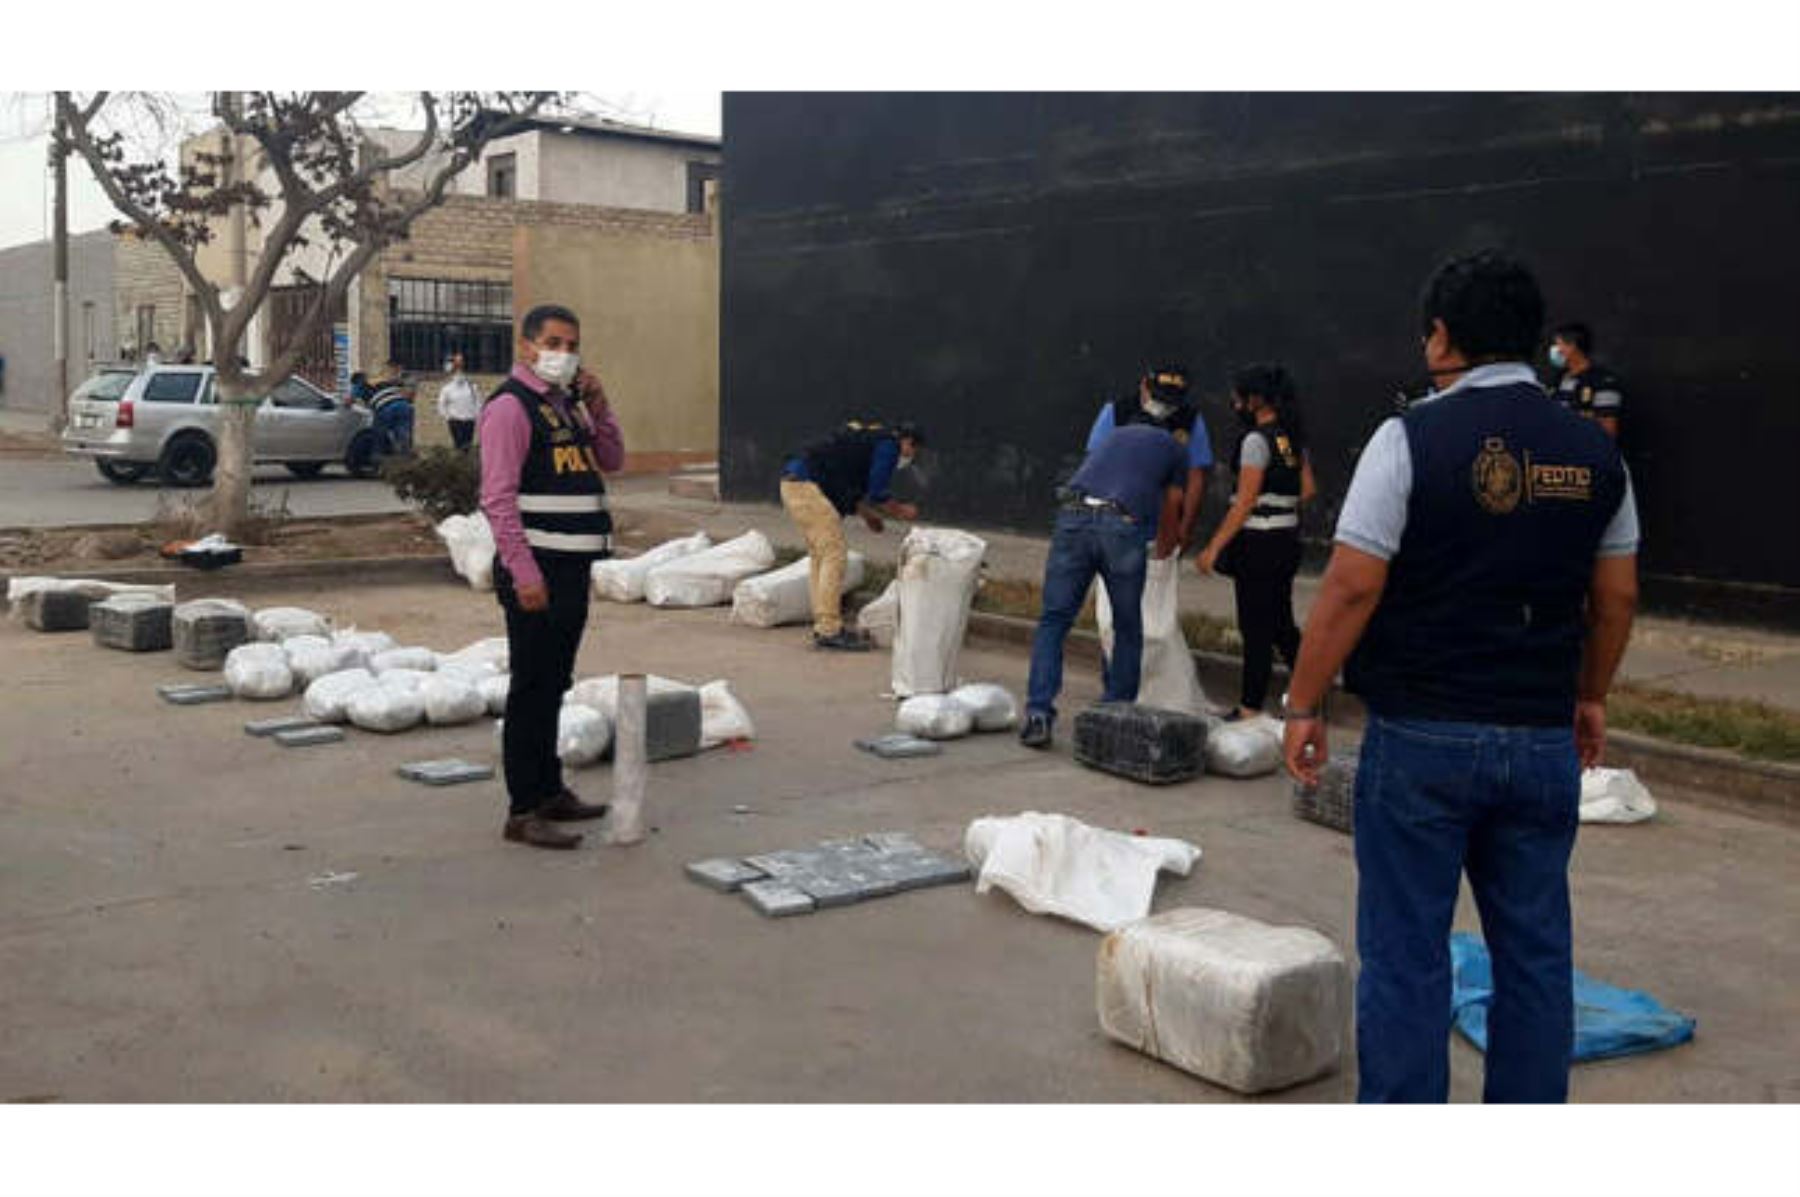 La sustancia ilícita –distribuida en 30 paquetes tipo ladrillos de alcaloide de cocaína y 59 bultos de marihuana– provenía del Alto Huallaga. ANDINA/Ministerio Público